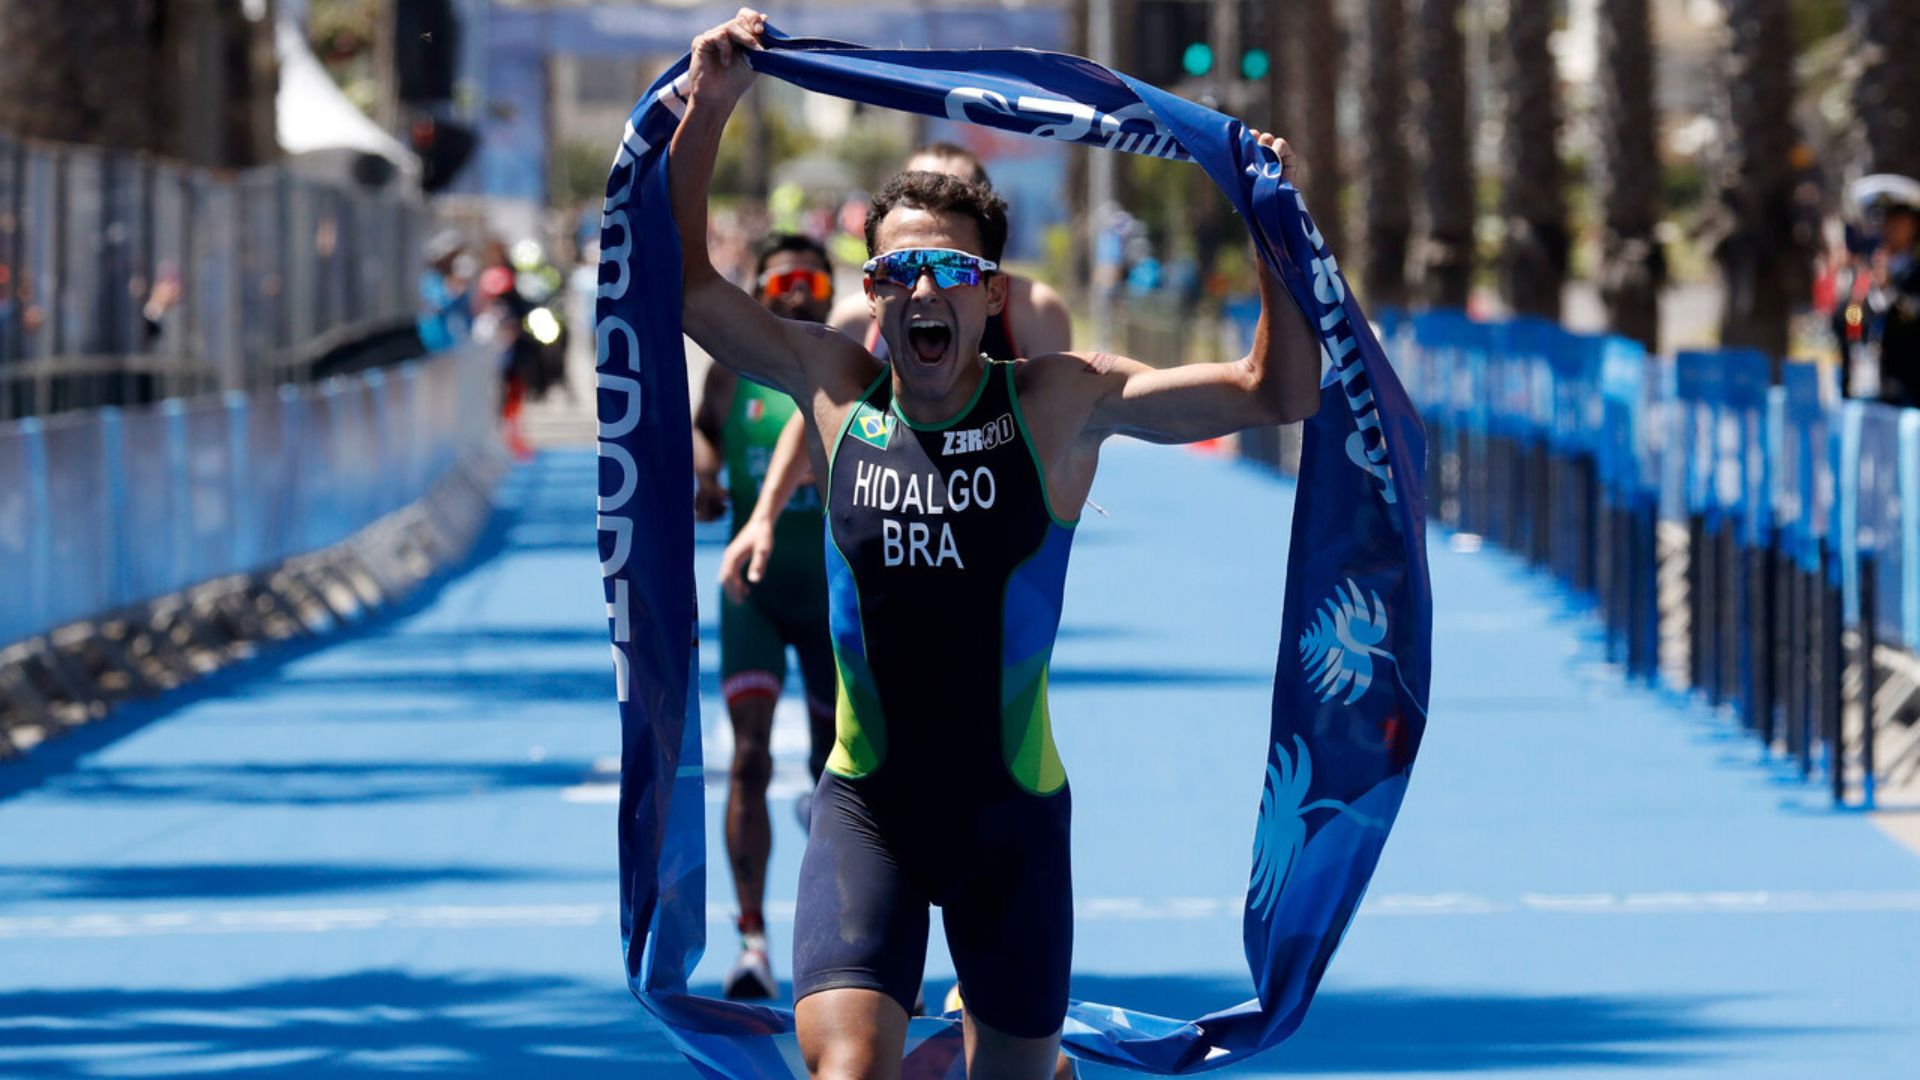 Emotivo triunfo de brasileño Hidalgo en el triatlón panamericano en Viña del Mar